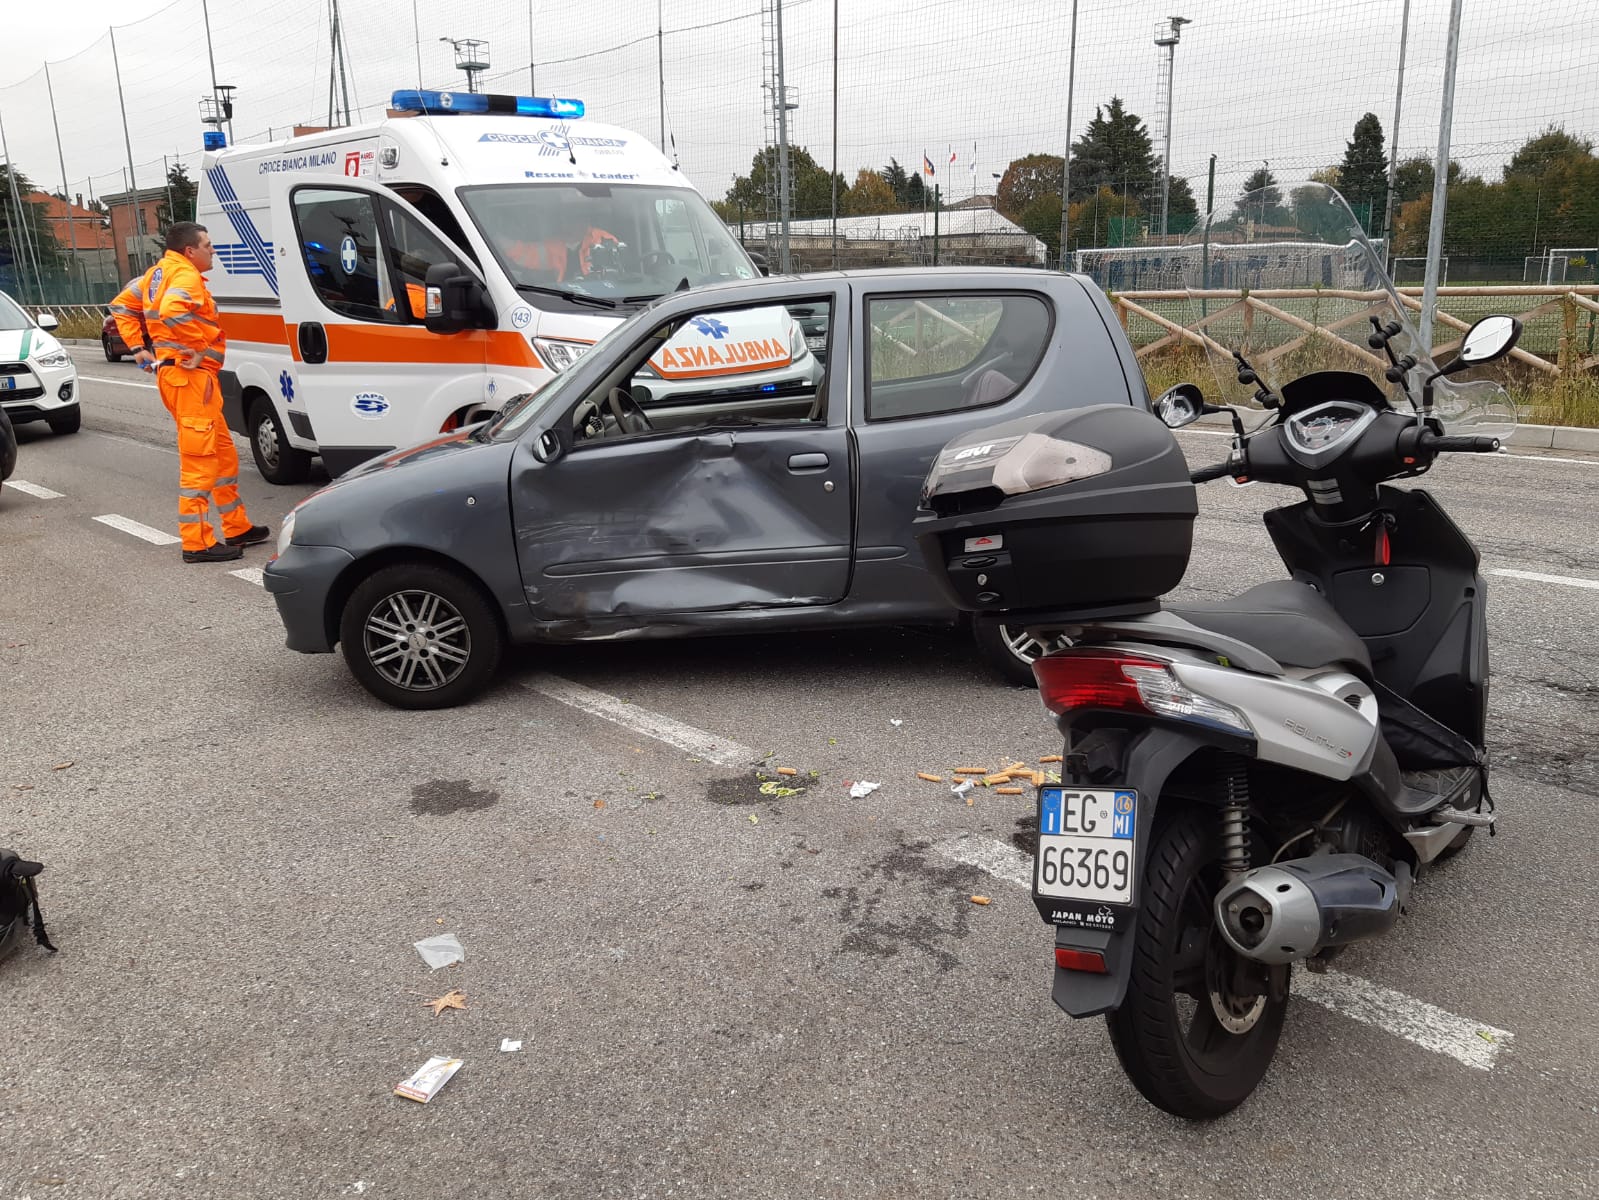 incidente tra un'auto e una moto a cassina de pecchi in via roma strada padana superiore